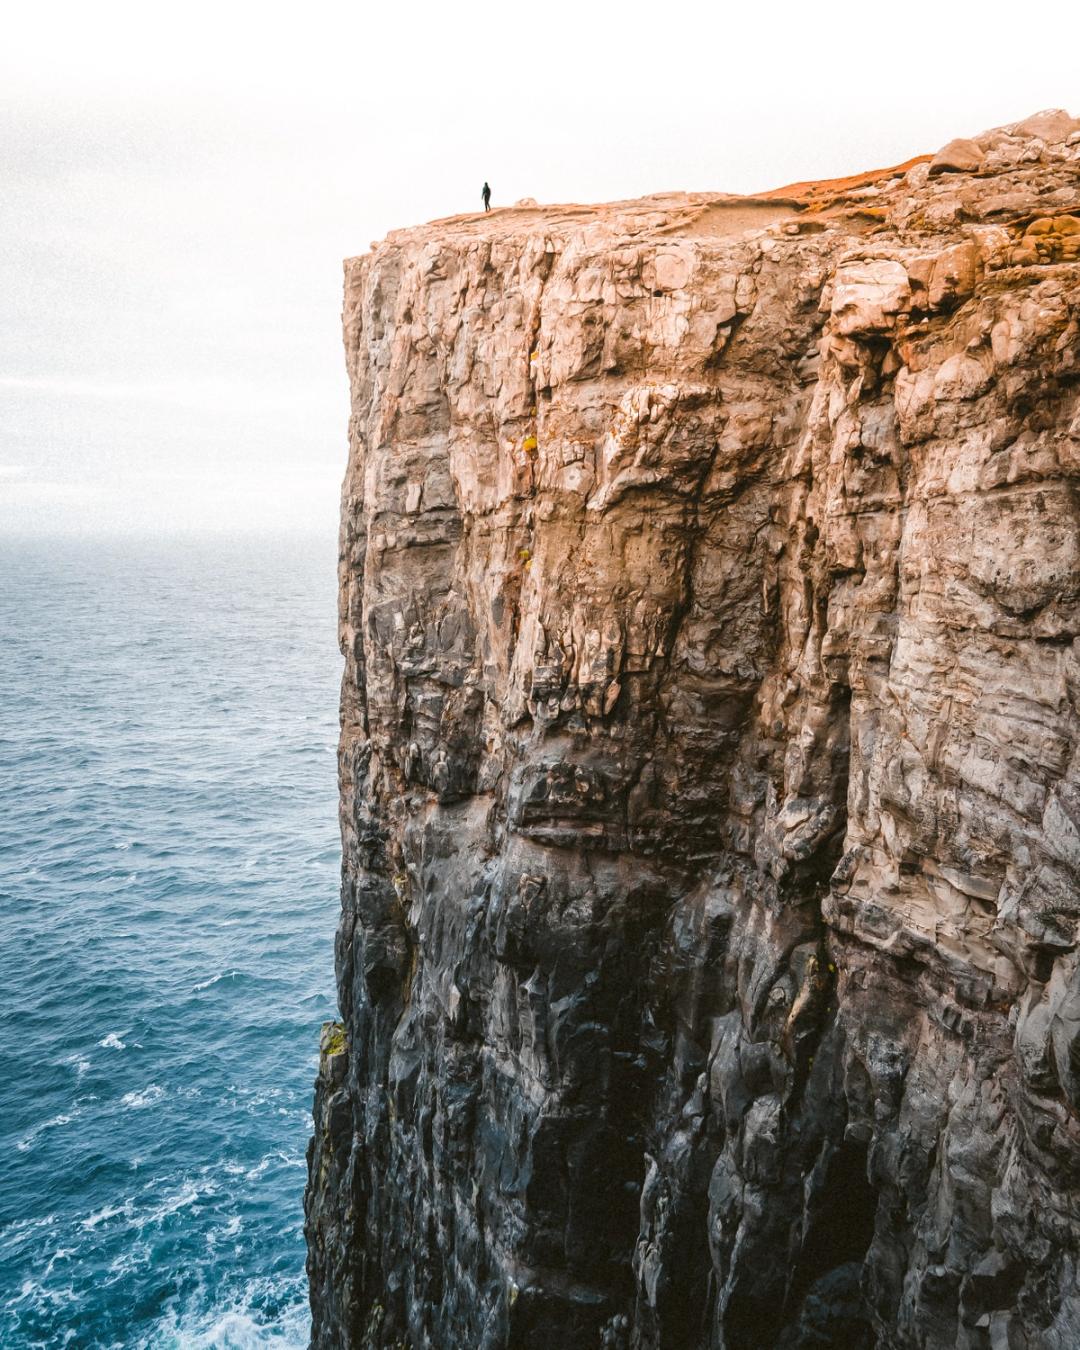 A cliffside